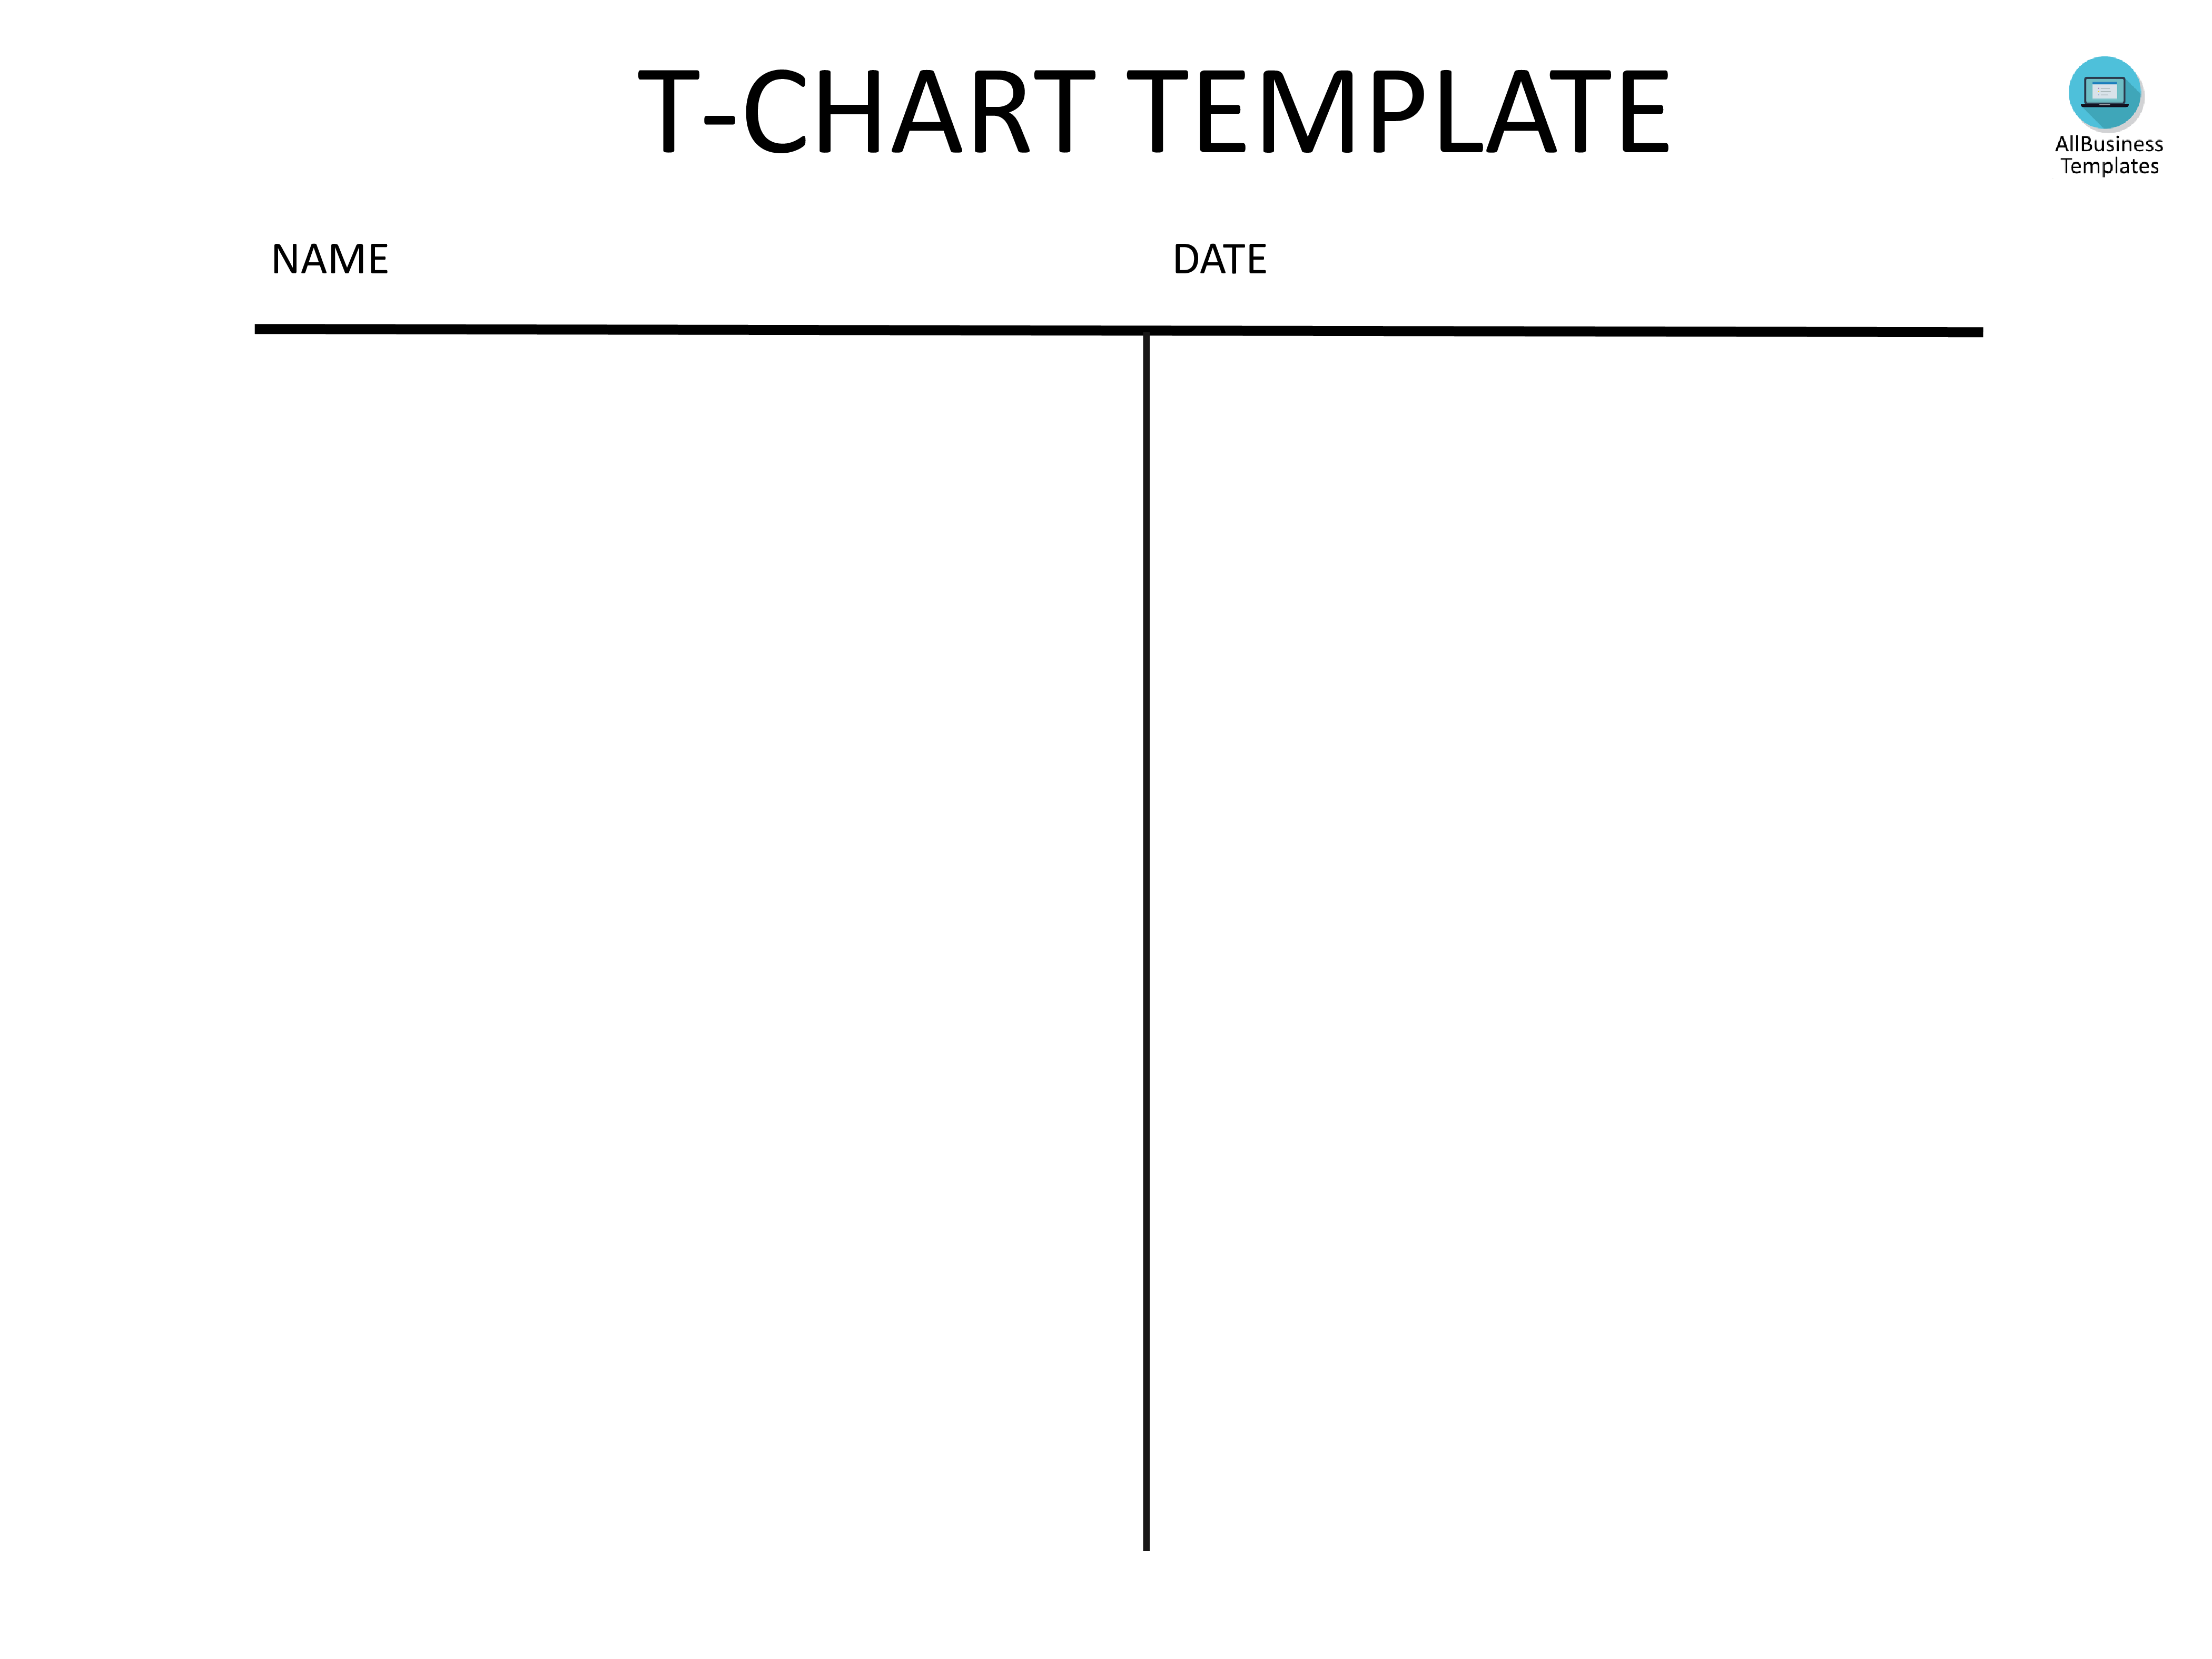 t-chart